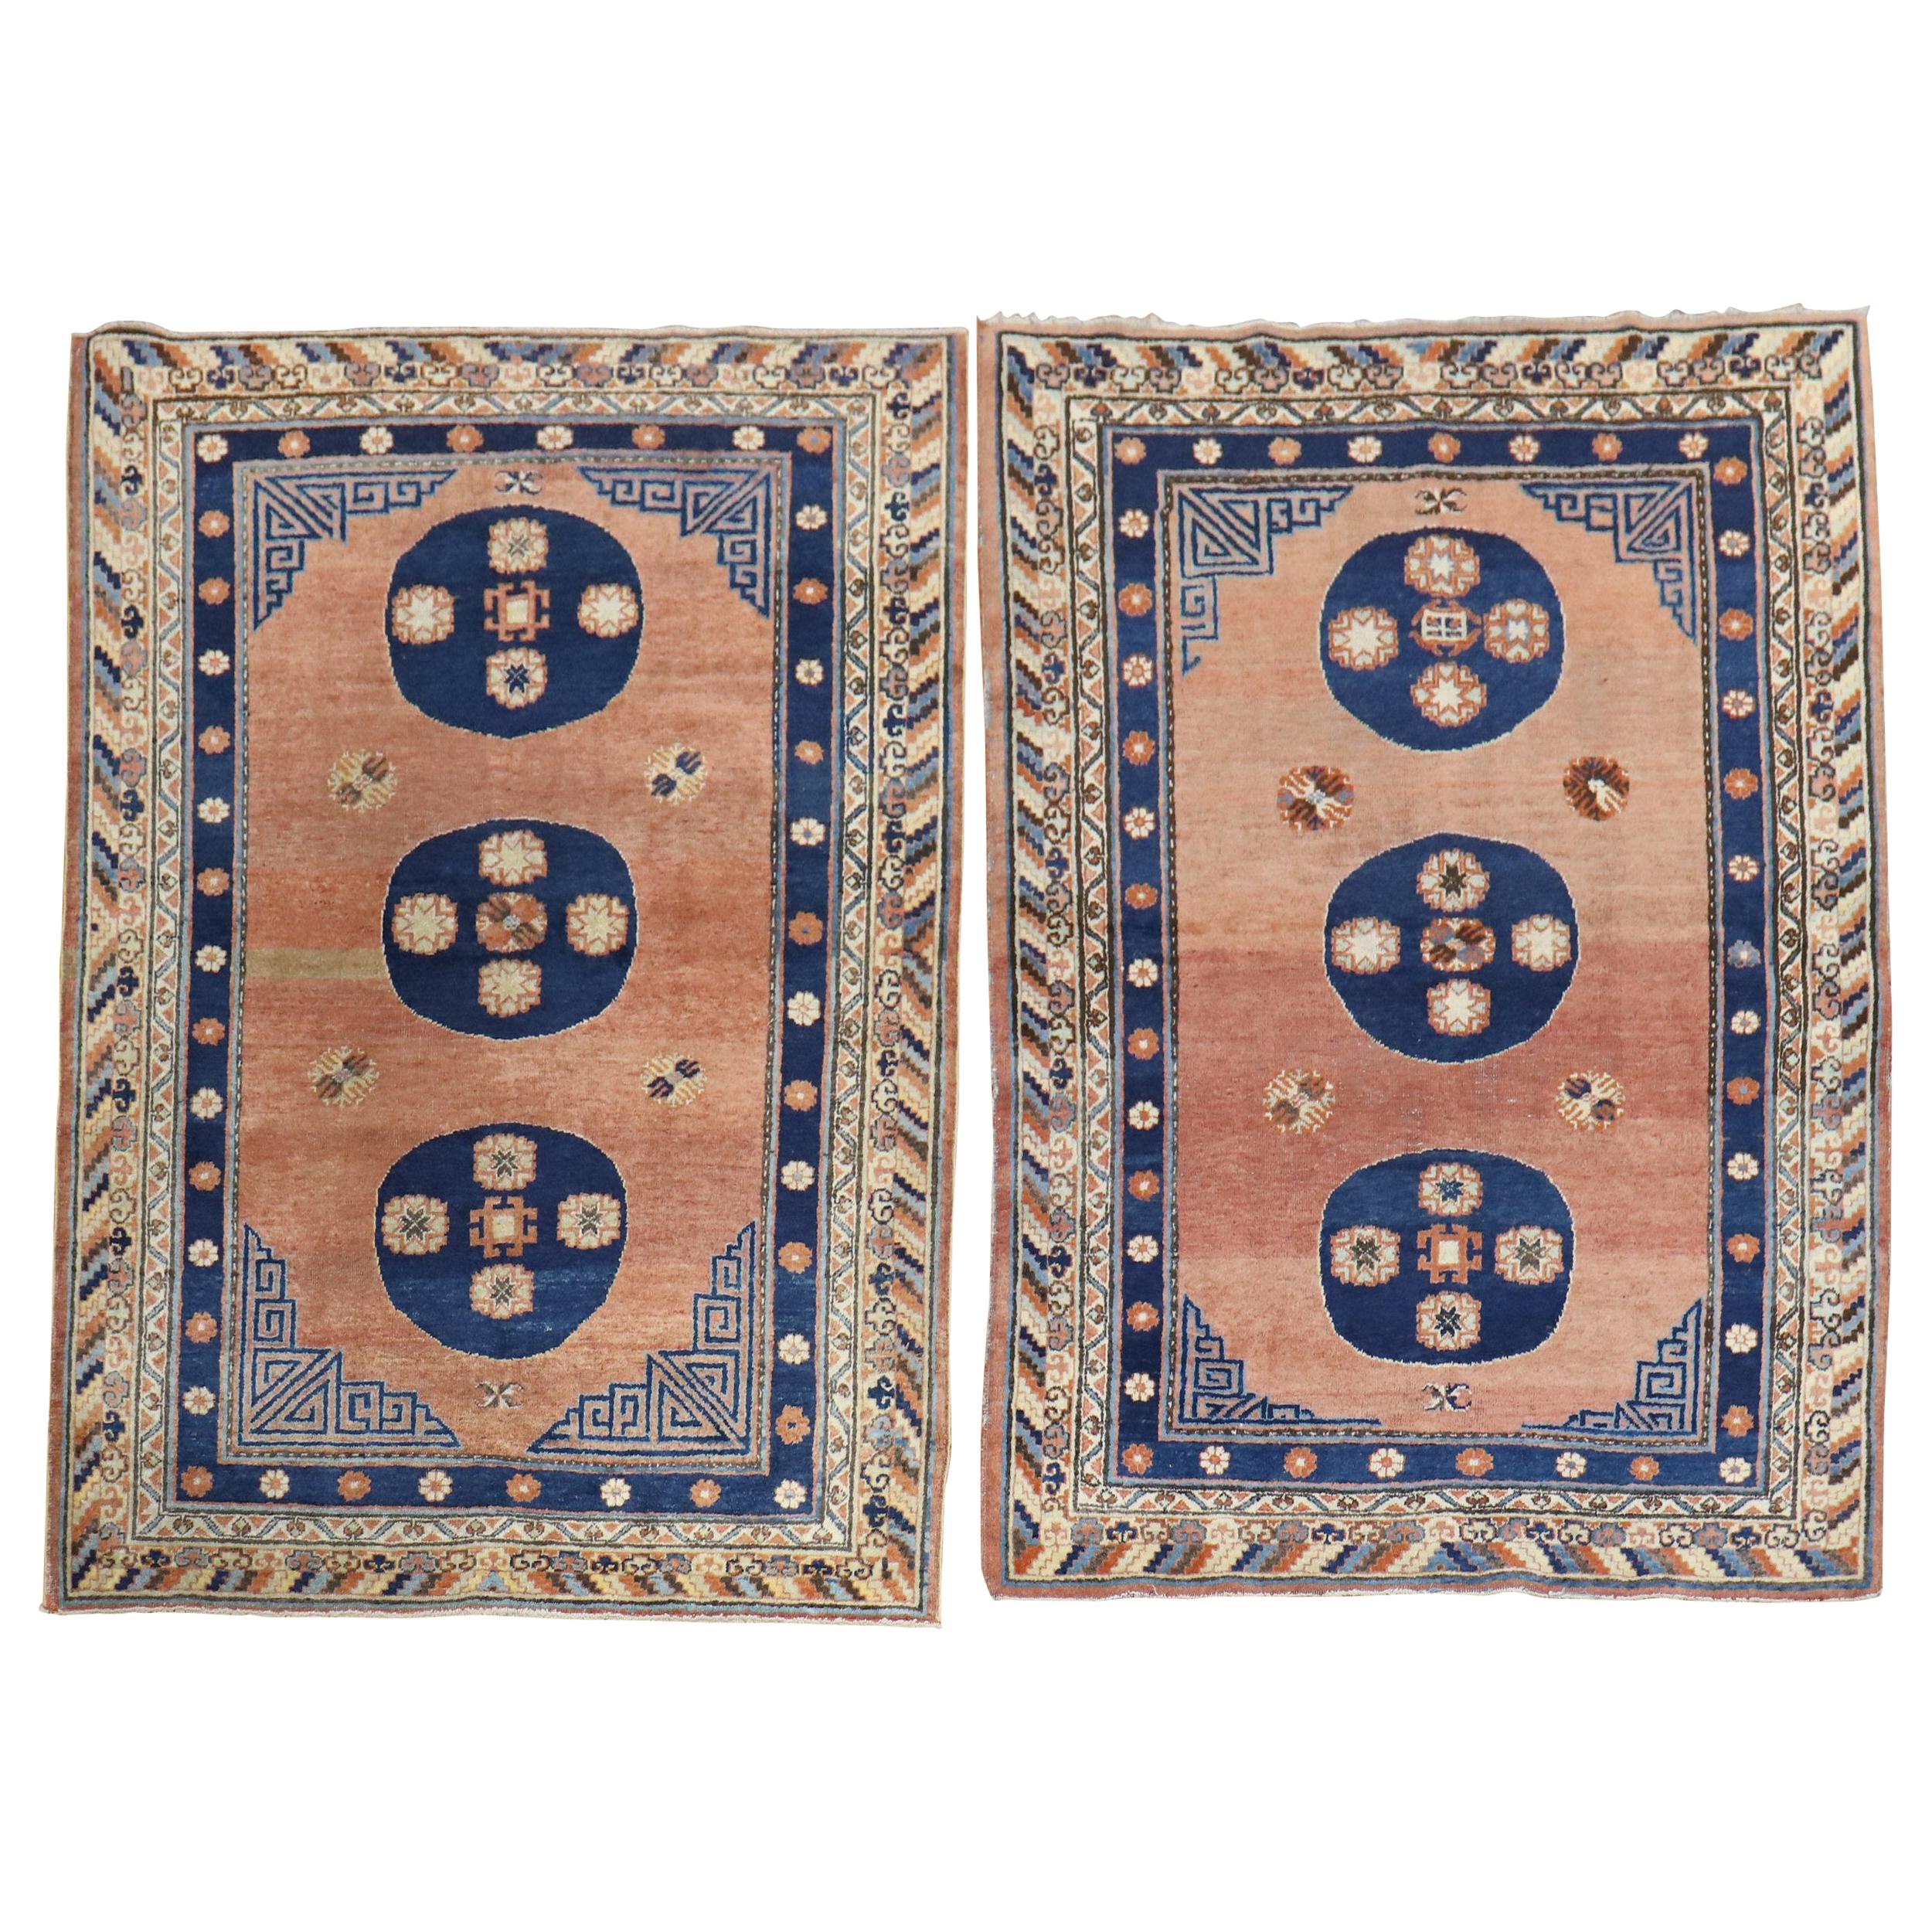 Seltenes passendes Paar antiker Khotan-Teppiche